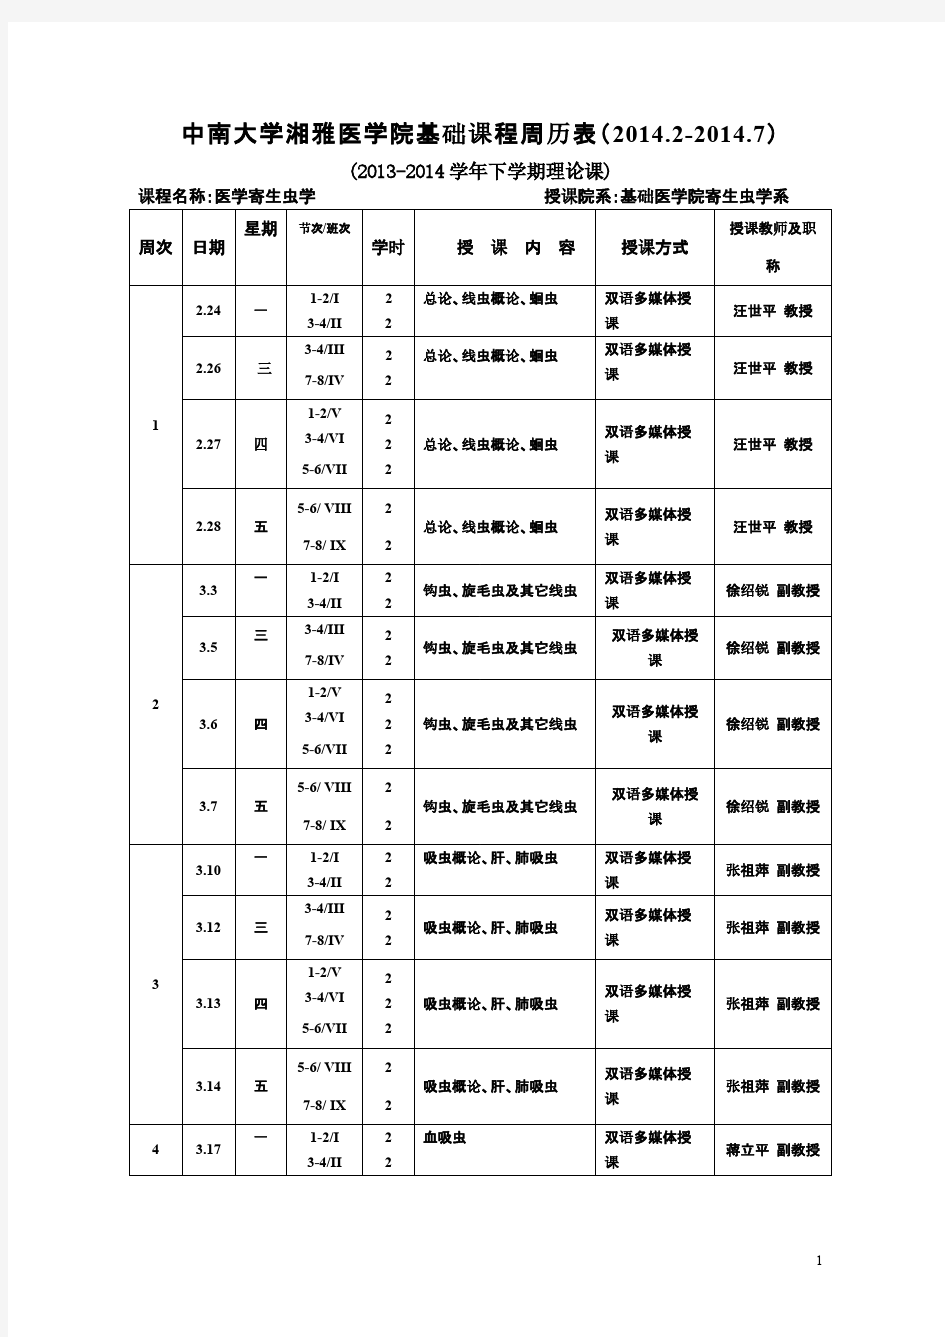 中南大学湘雅医学院基础课程周历表(2014.2-7)